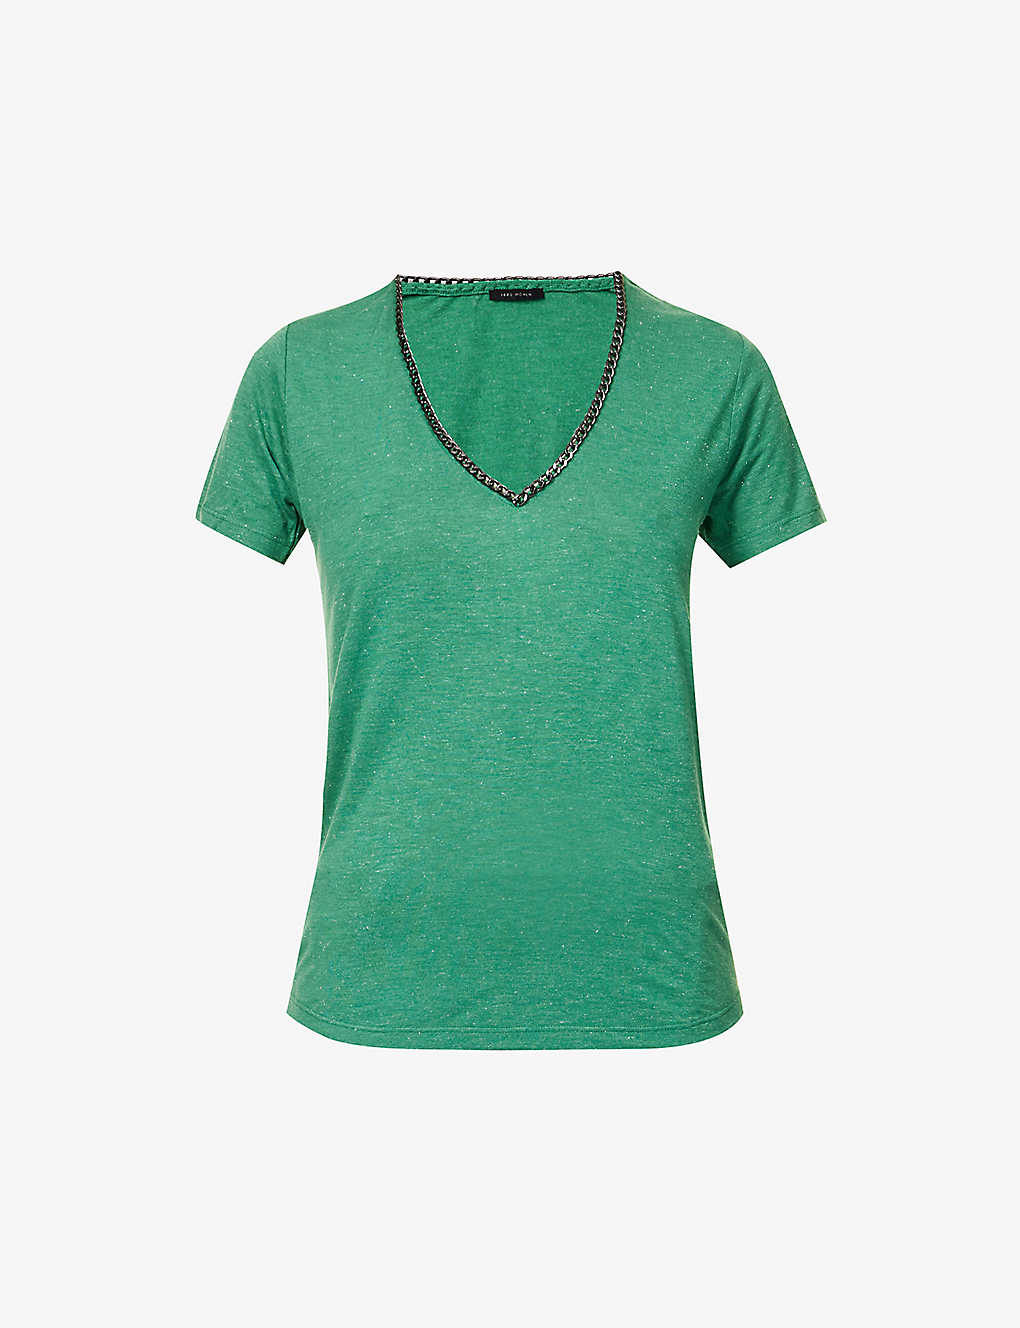 Ikks Womens Light Green Metallic-embellished V-neck Woven Top